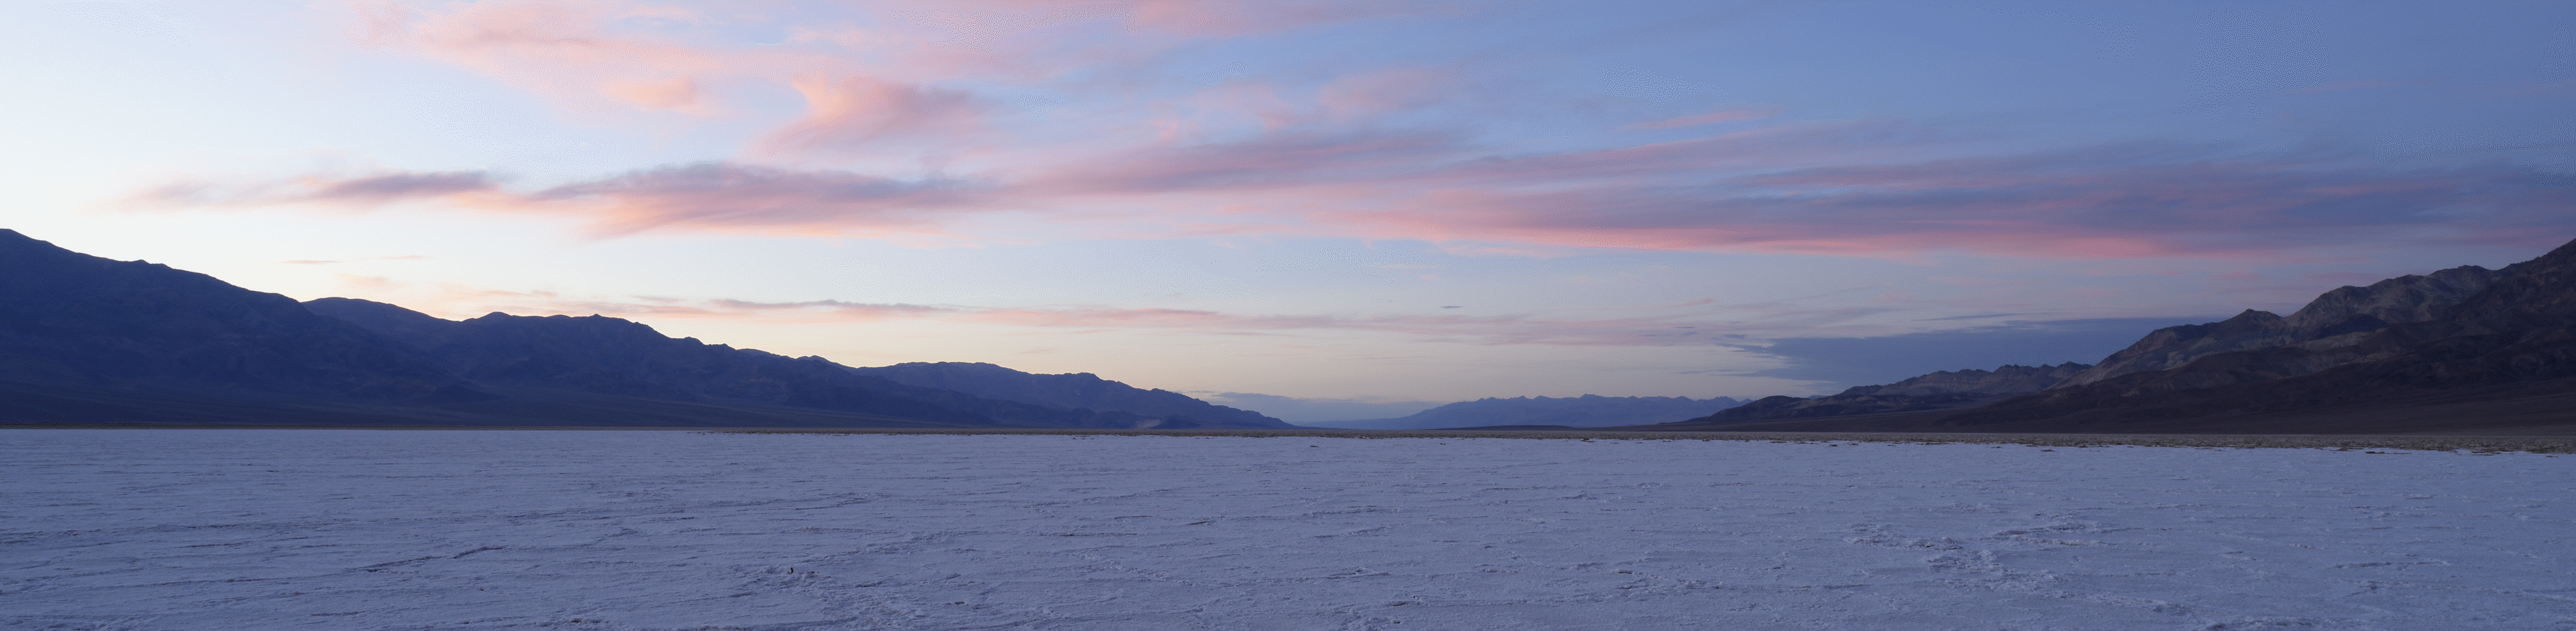 멀리 보이는 산 너머로 석양이 지고 있는 사막 풍경을 광각으로 촬영한 샷